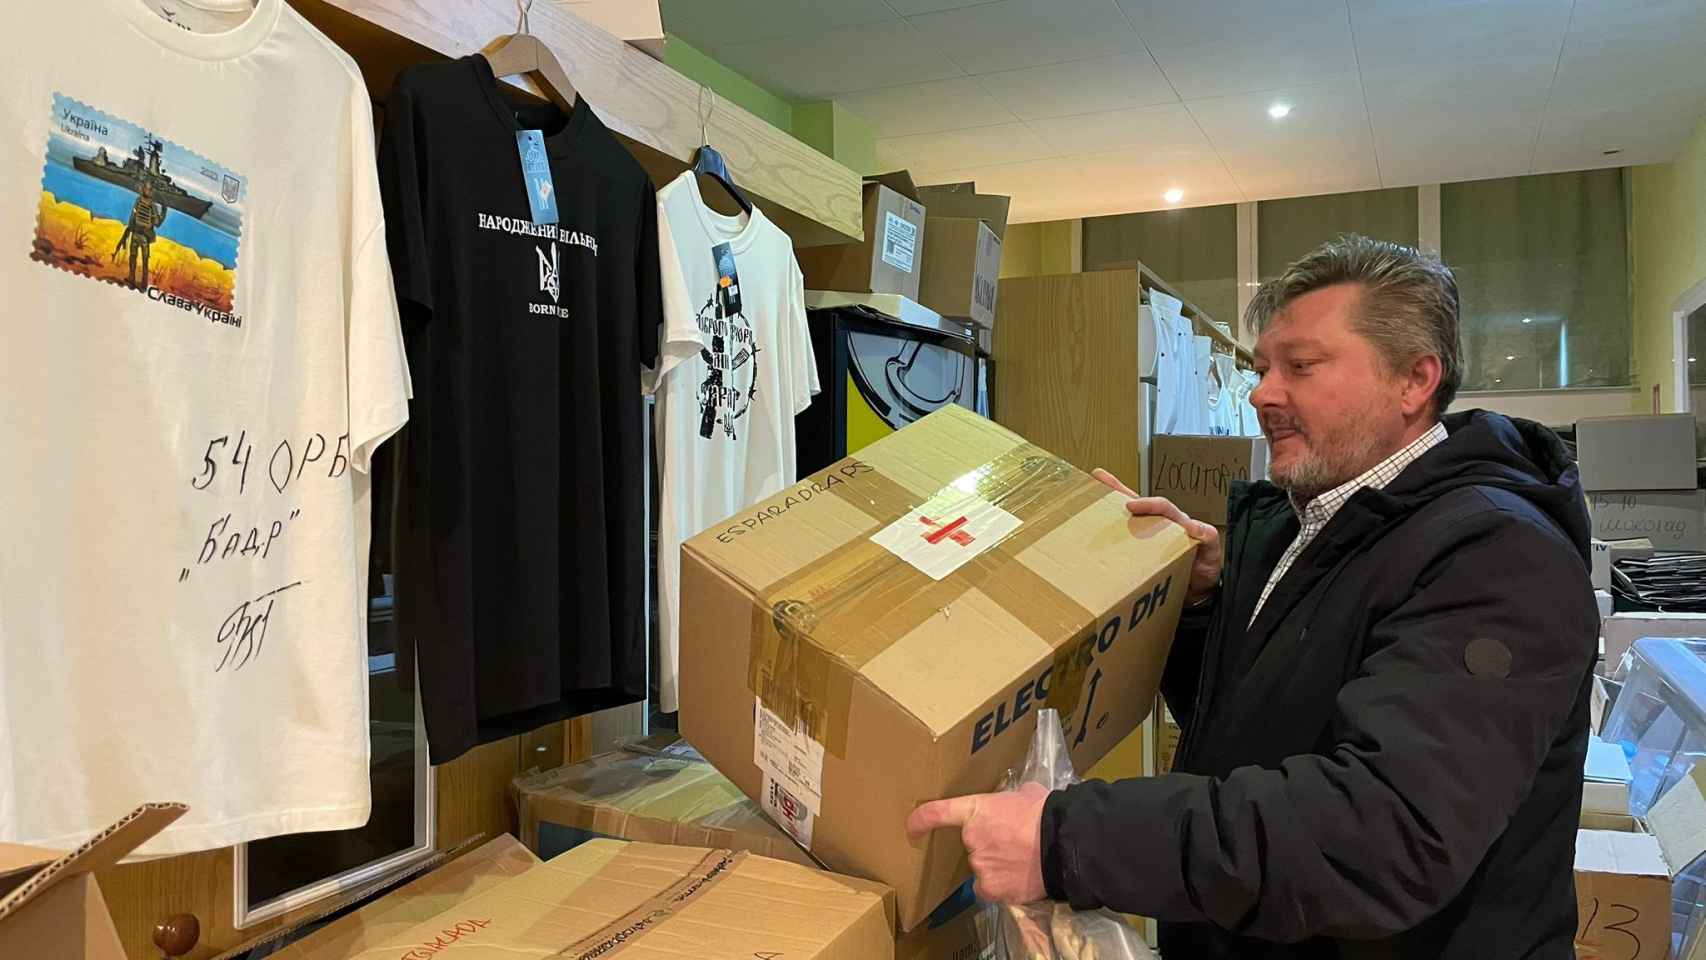 Grynkiv con cajas de ayuda humanitaria entre objetos de 'merchandising' que vende en el locutorio que regenta en Guissona.